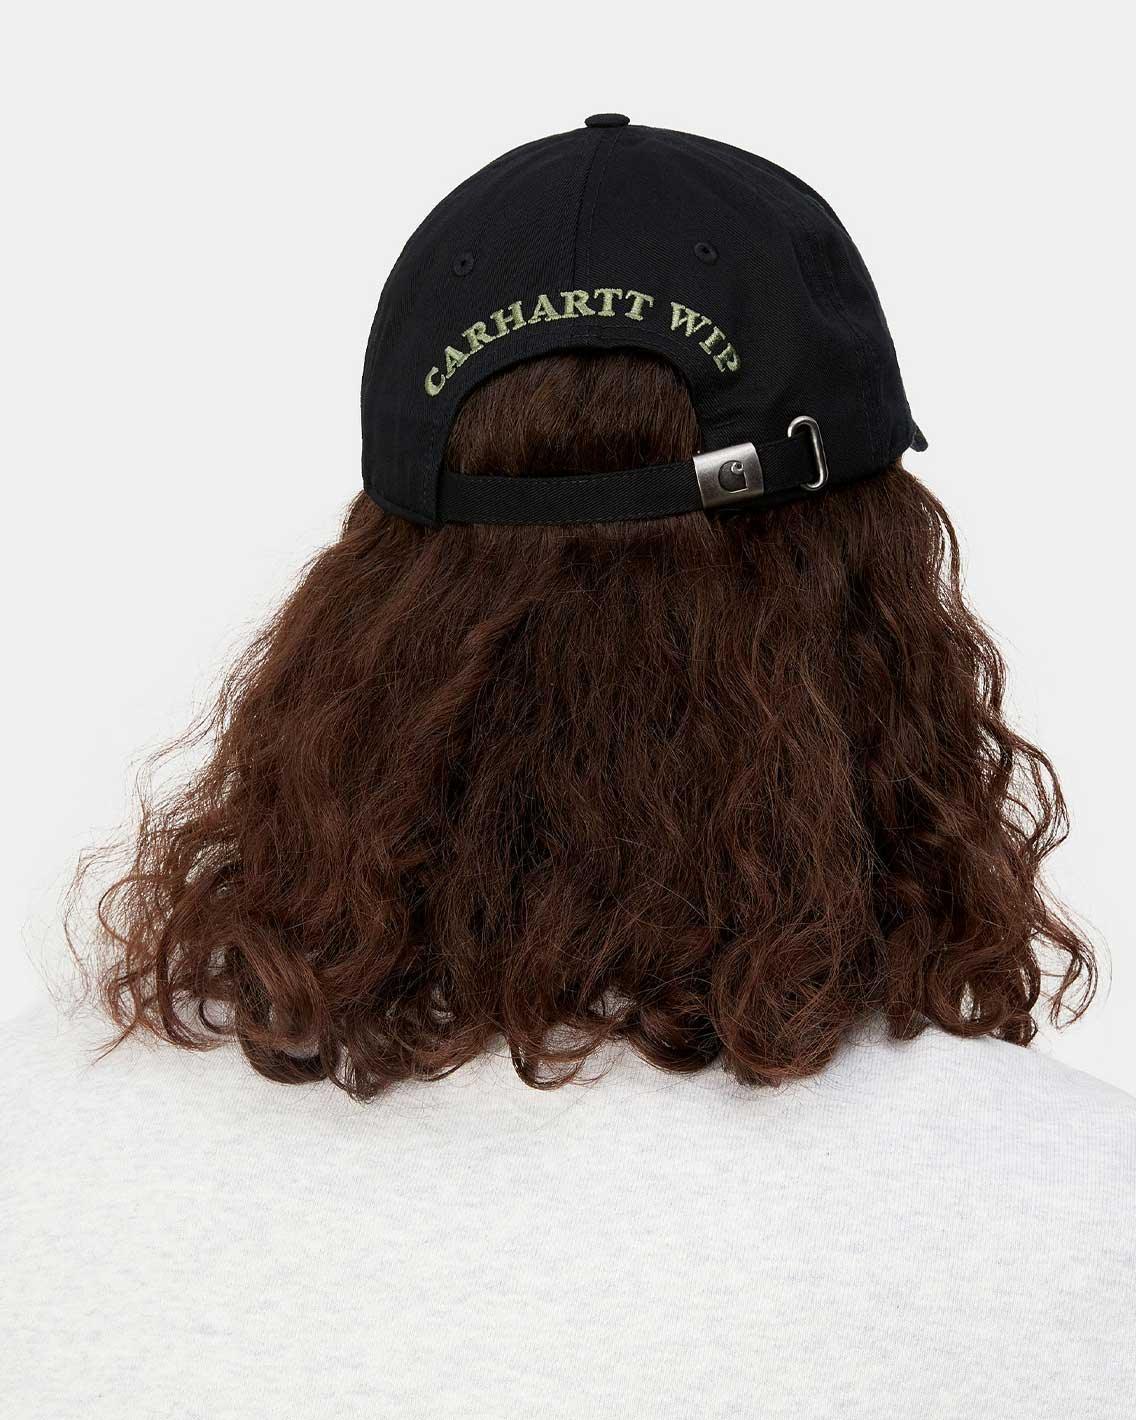 Carhartt - Underground Sound Cap - Black Hats Carhartt   